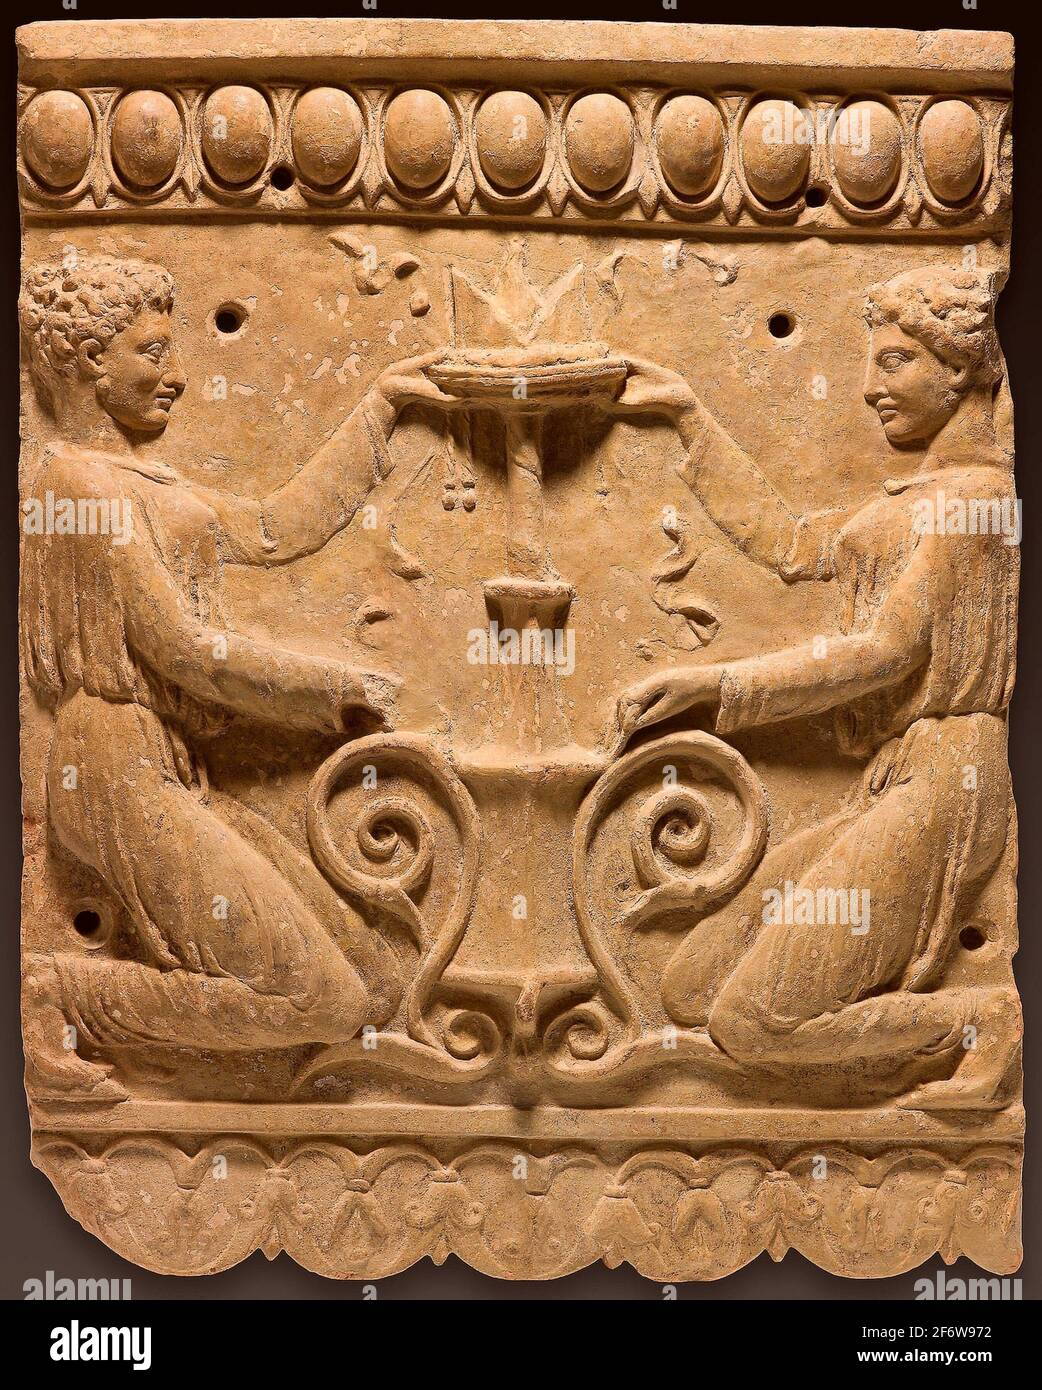 Antico romano. Lapide in rilievo - inizio i secolo d.C. - romana. Terracotta.  1 D.C. 50 D.C. Roma Foto stock - Alamy